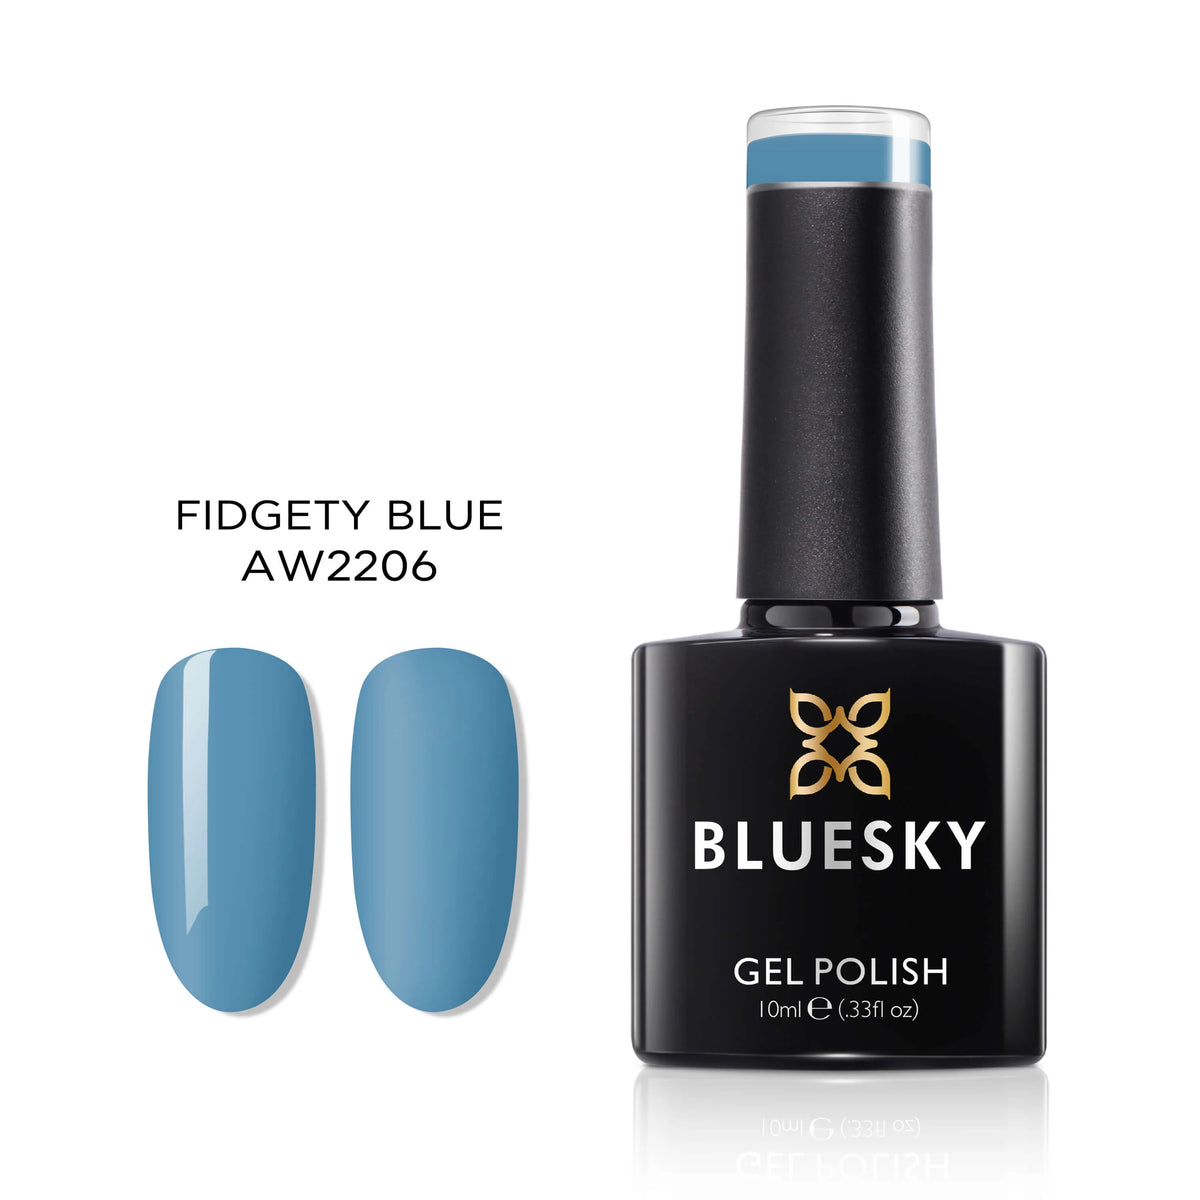 Vernis Gel Bluesky-Fidgety Blue-AW2206